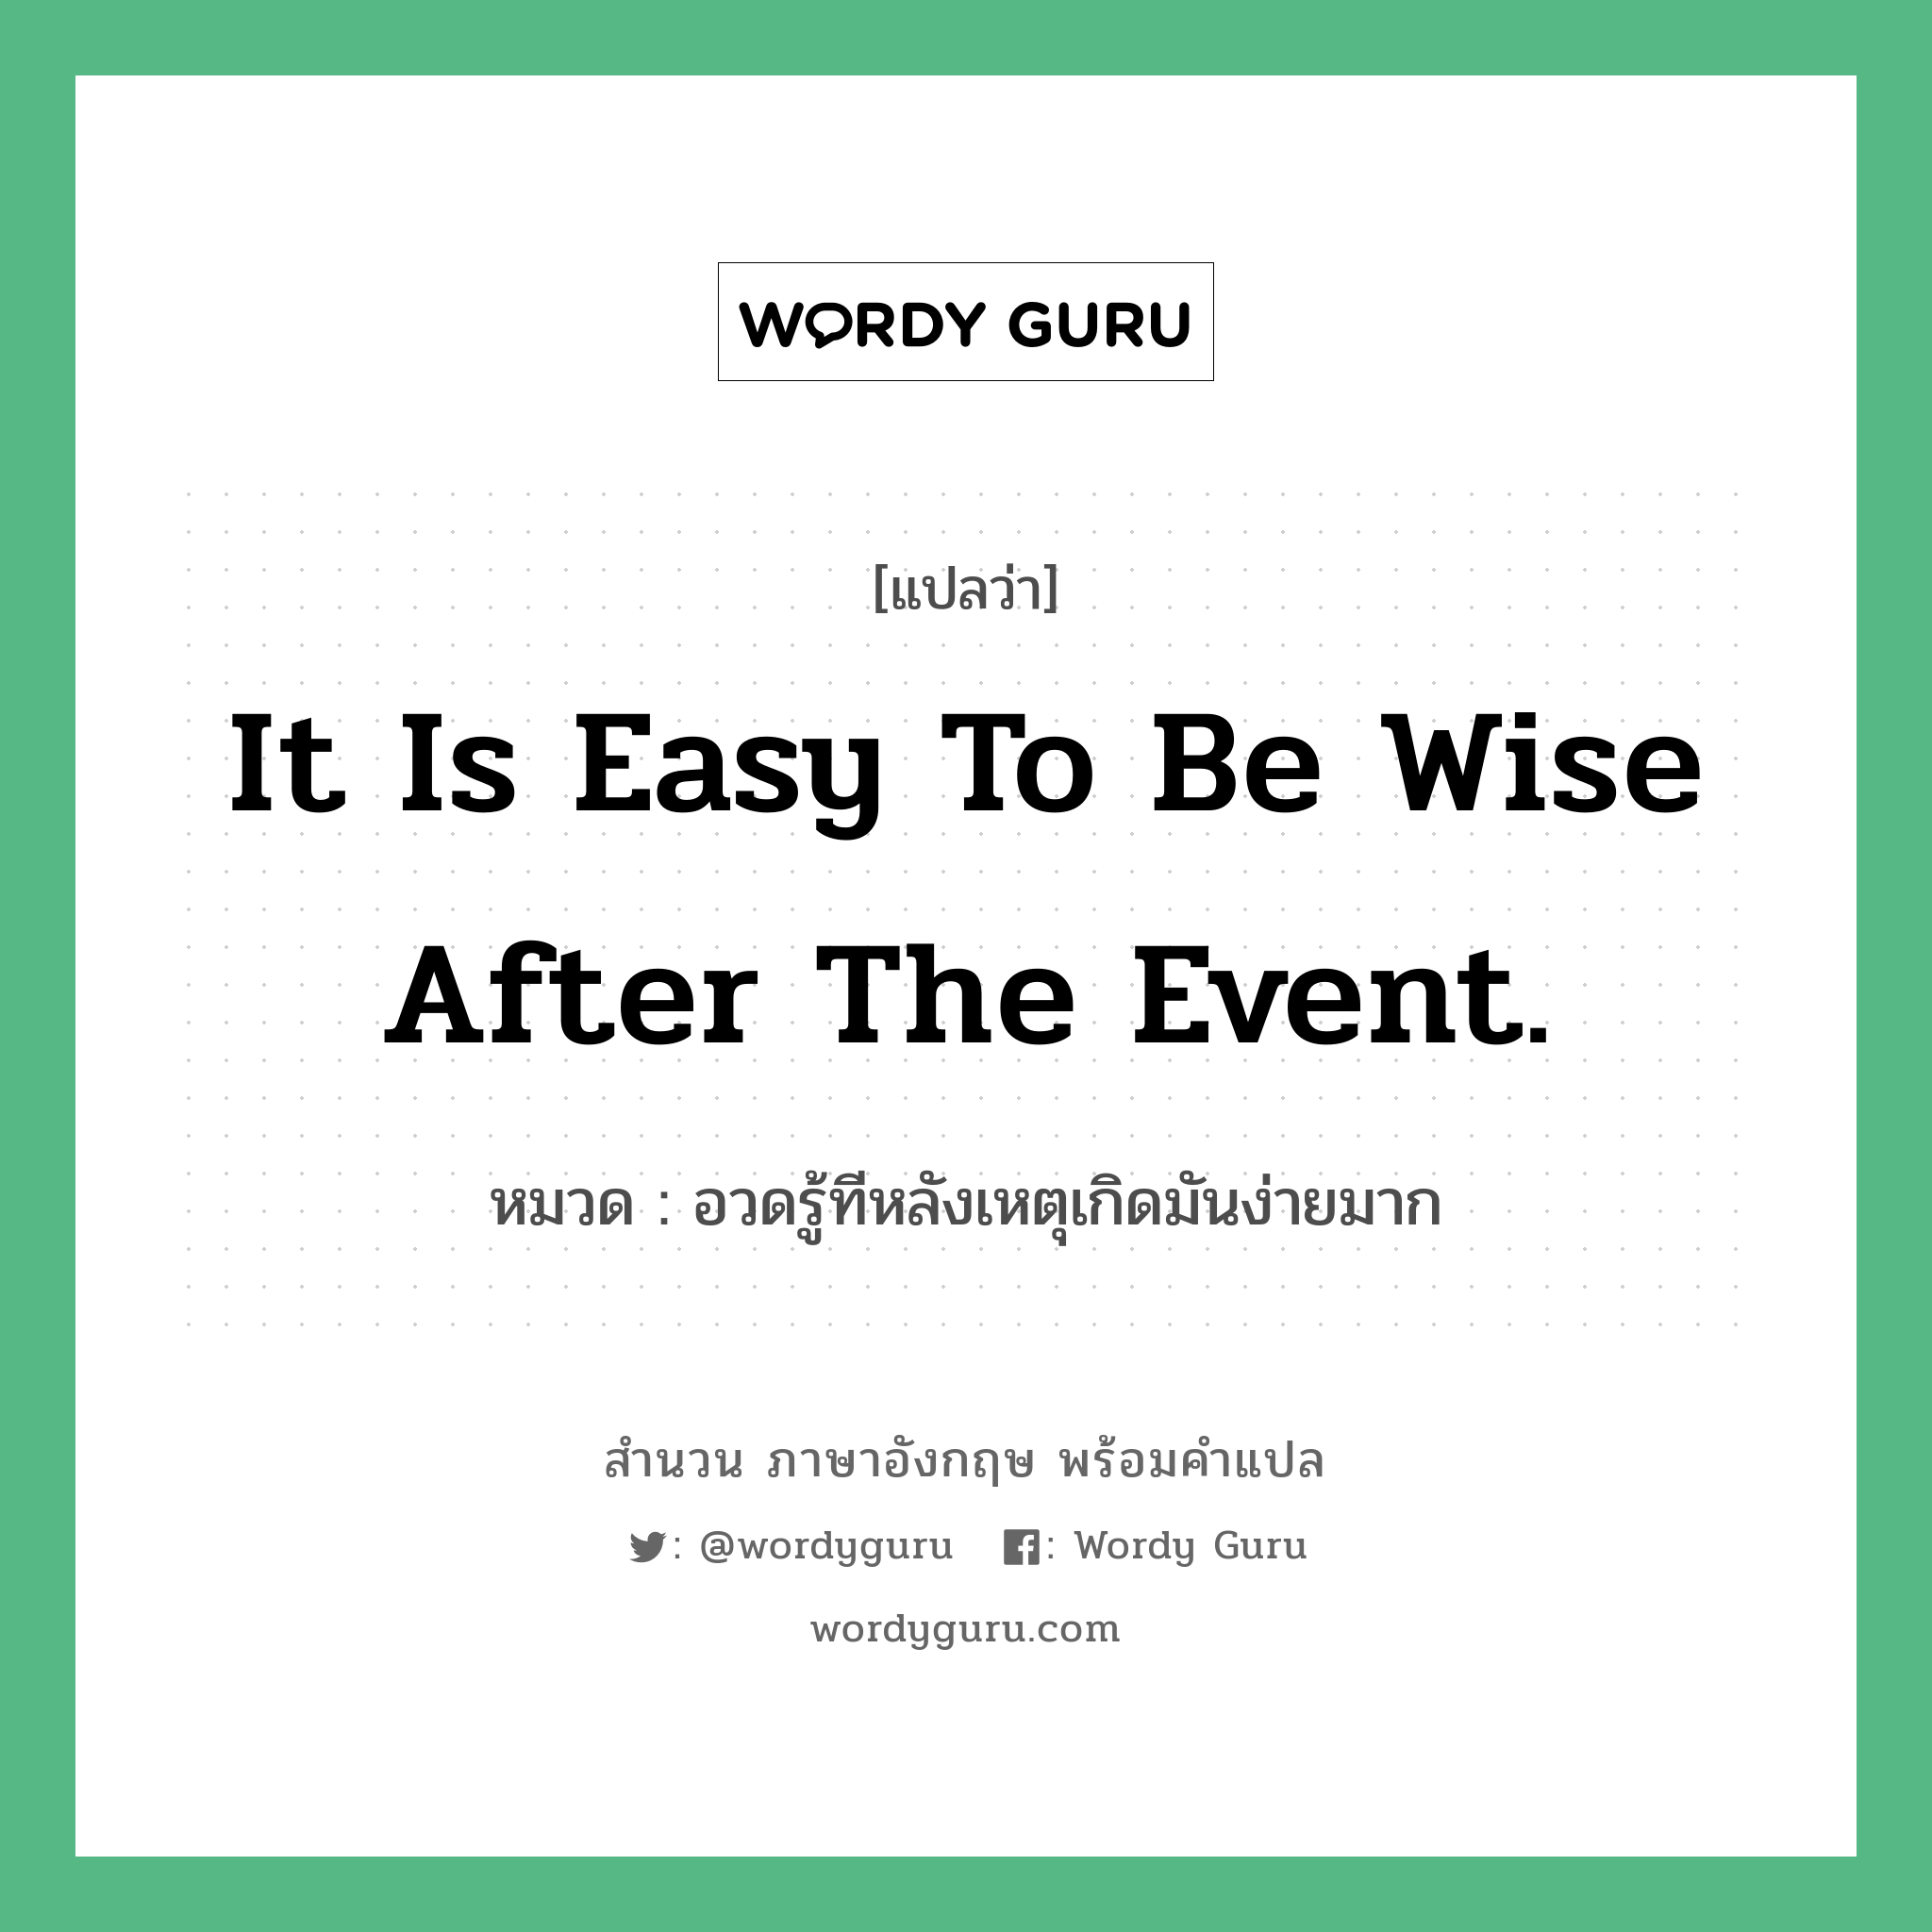 It is easy to be wise after the event. แปลว่า?, สำนวนภาษาอังกฤษ It is easy to be wise after the event. หมวด อวดรู้ทีหลังเหตุเกิดมันง่ายมาก คำสุภาษิต ภาษาอังกฤษ หมวด คำสุภาษิต ภาษาอังกฤษ